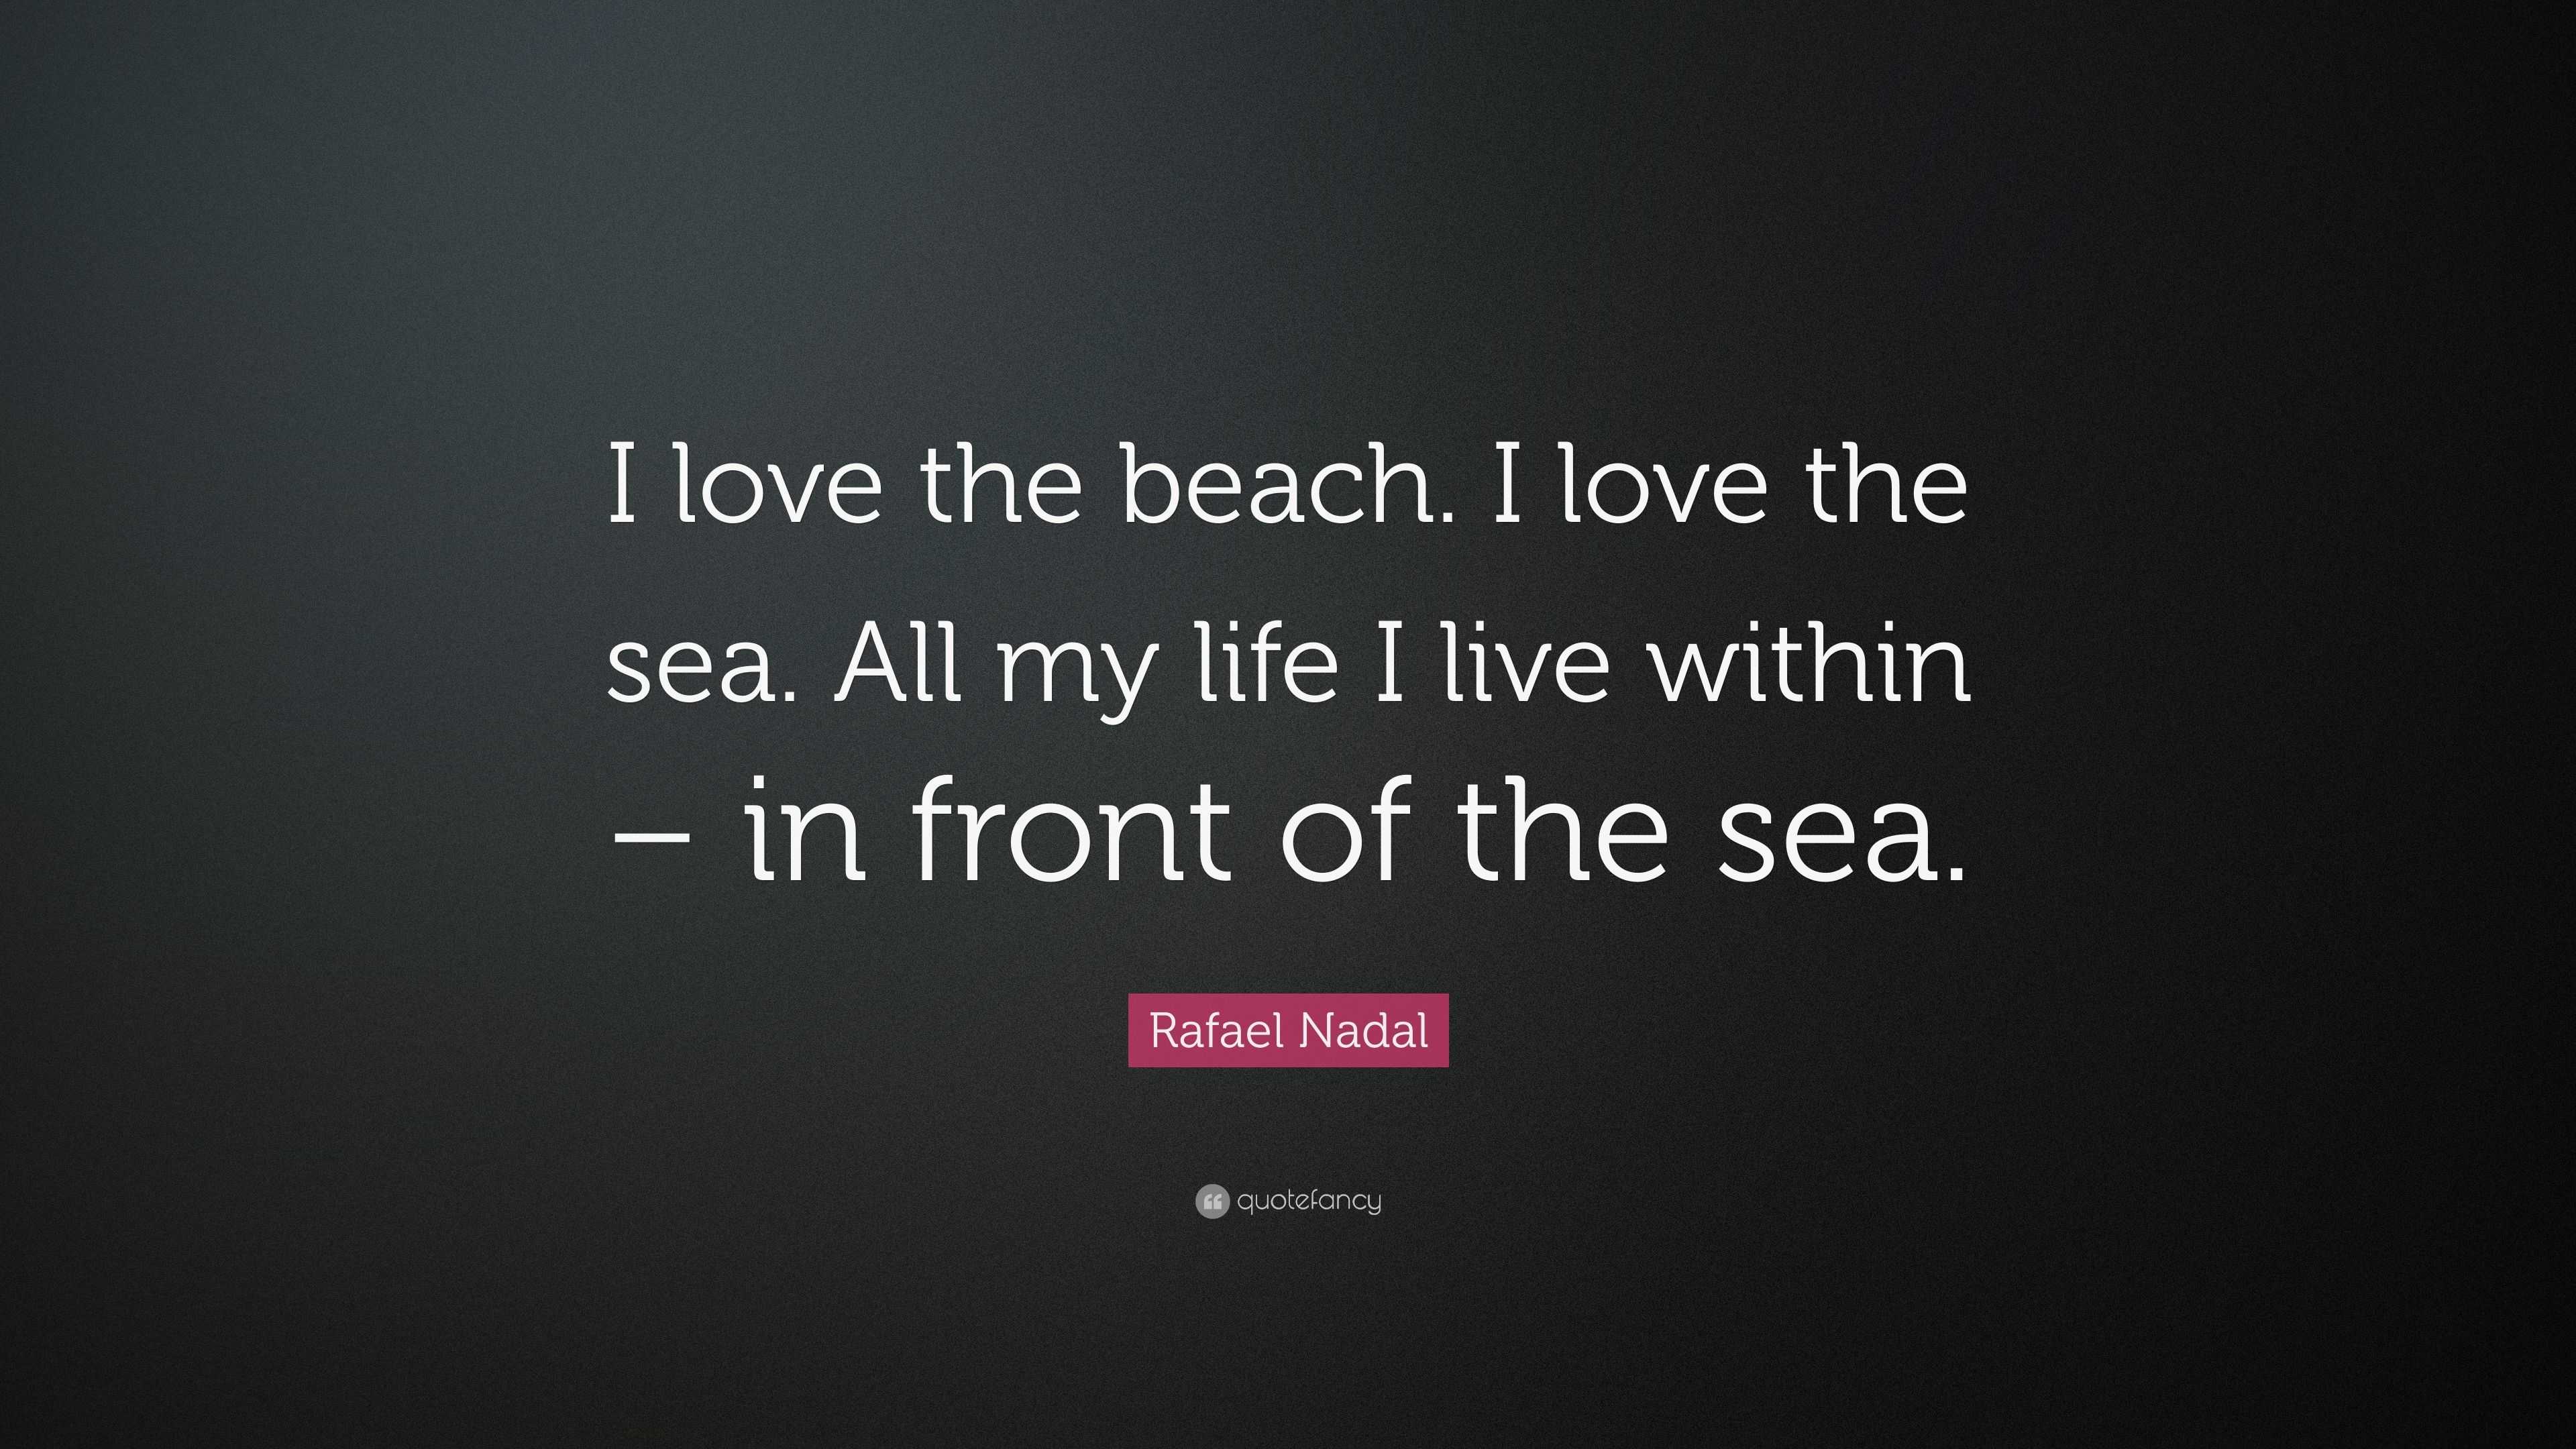 Rafael Nadal Quote “I love the beach I love the sea All